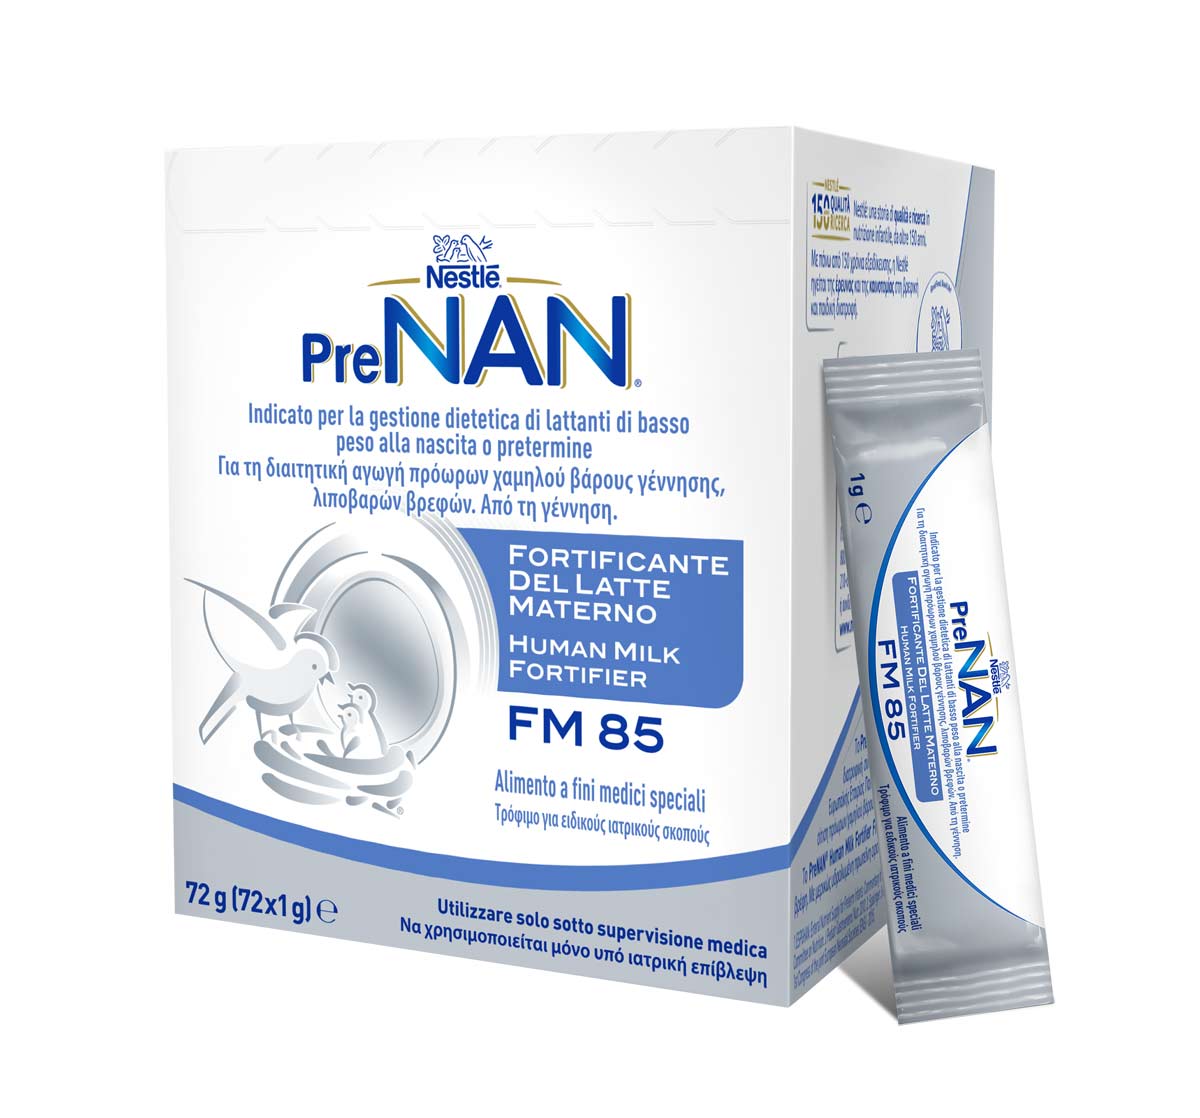 Nestlé PreNAN Fortificante del Latte Materno 72 g (72 x 1 g). Alimento a fini medici speciali. Dalla nascita